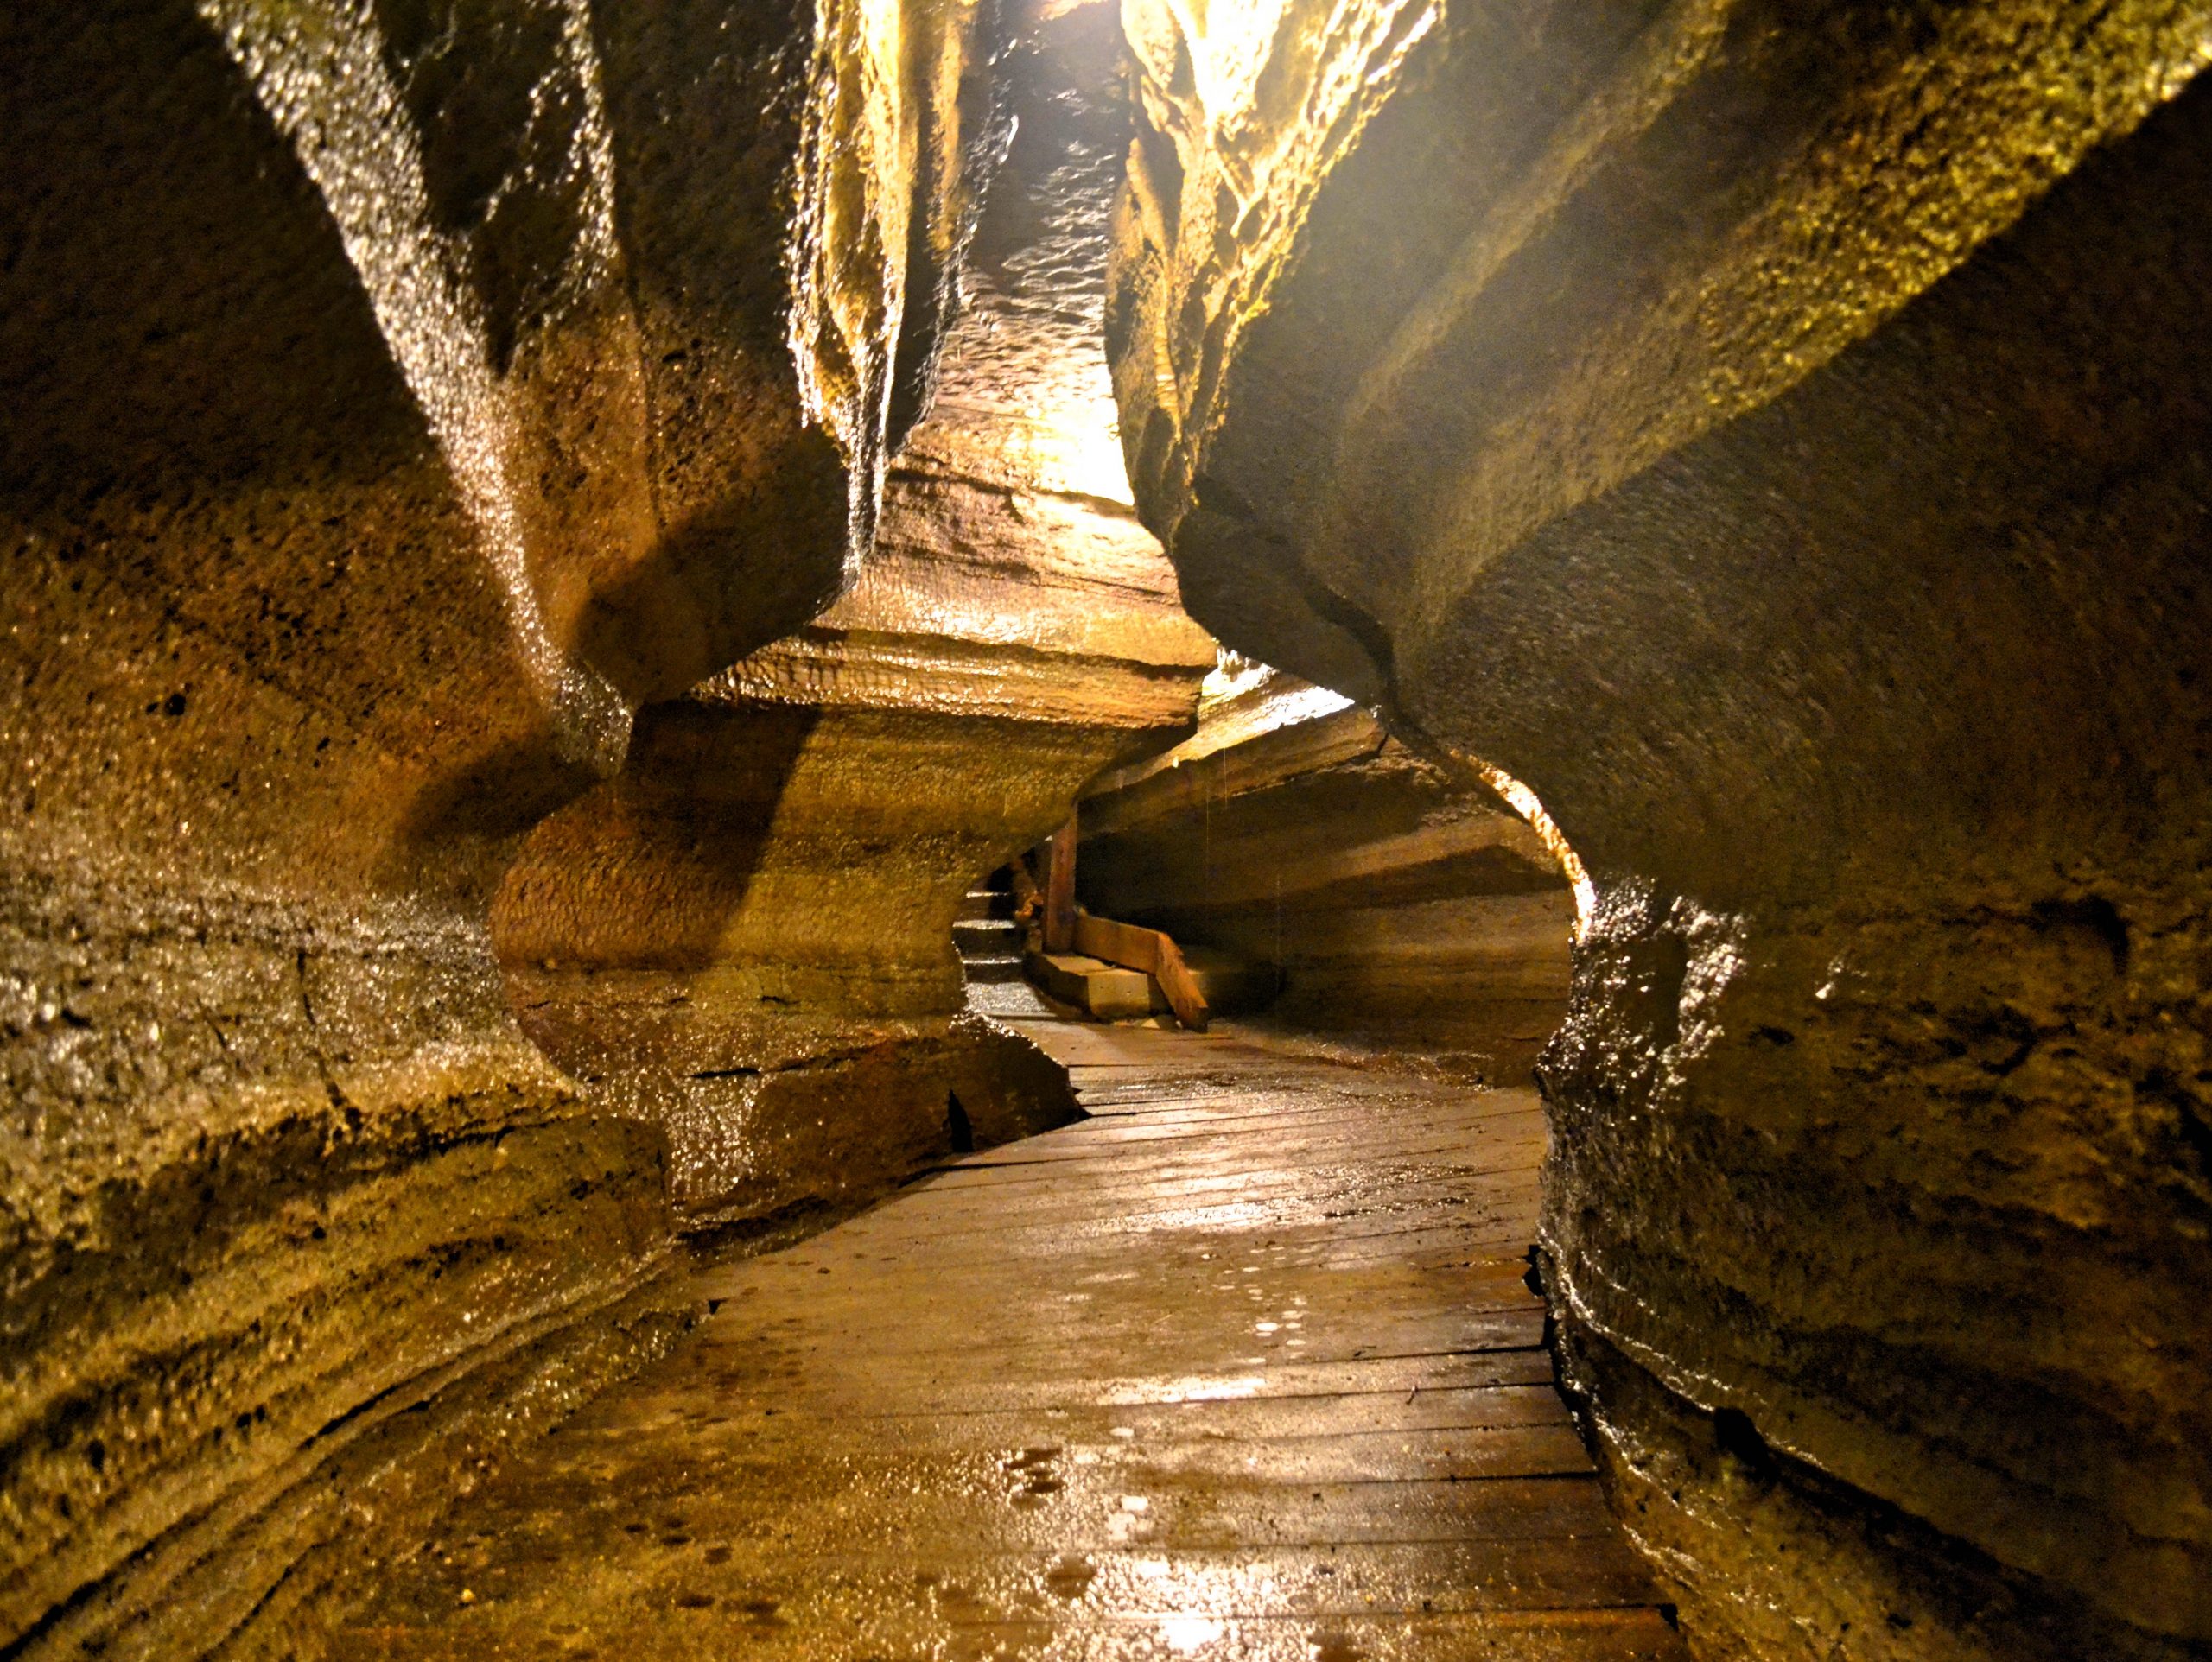 The Bonnechere Caves